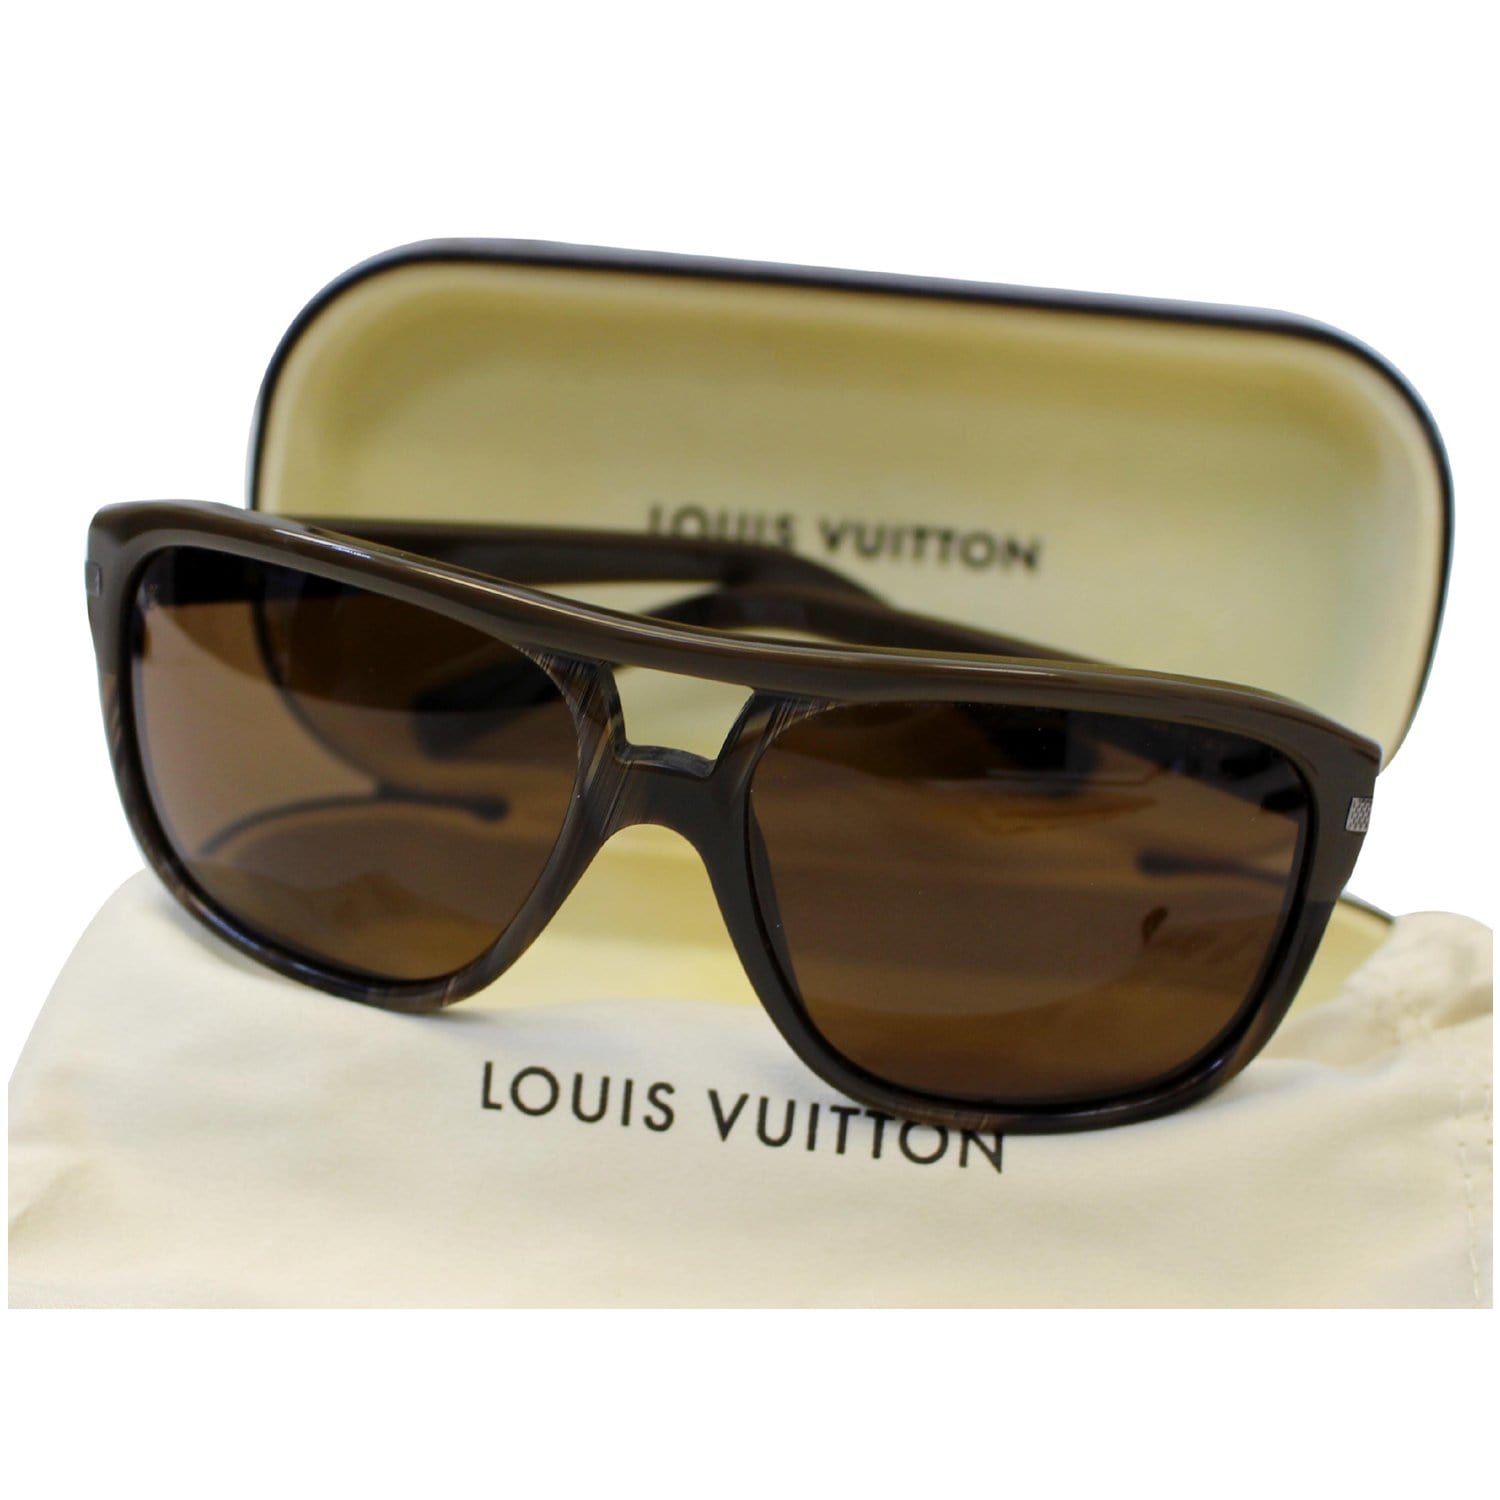 Купить духи Louis Vuitton Le Jour se Leve. Оригинальная парфюмерия